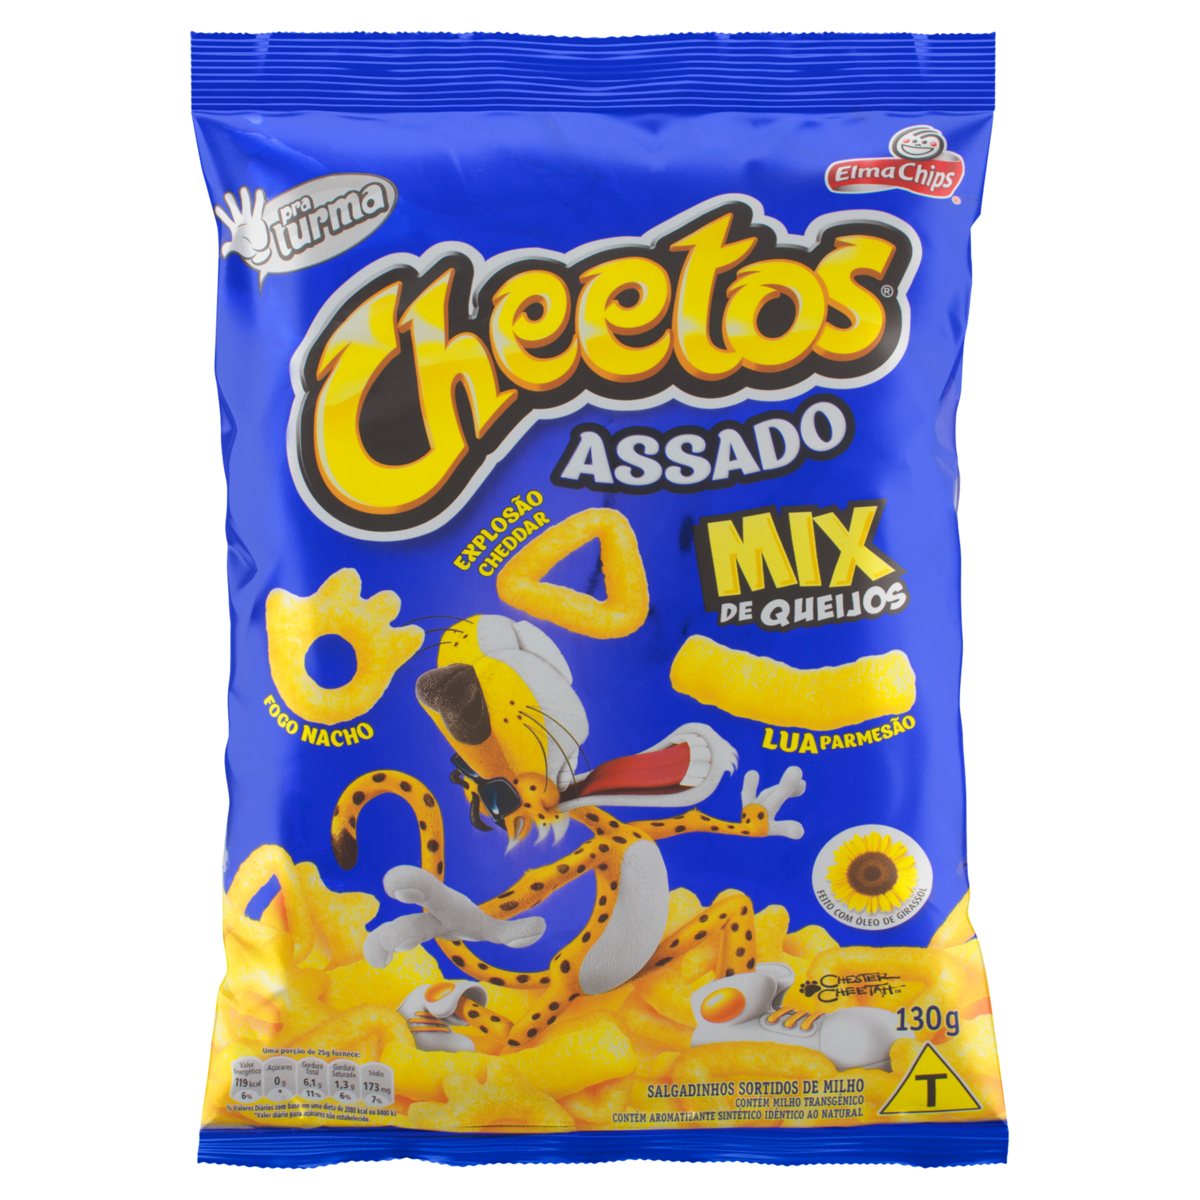 Salgadinho de Milho Mix de Queijos Elma Chips Cheetos 150g